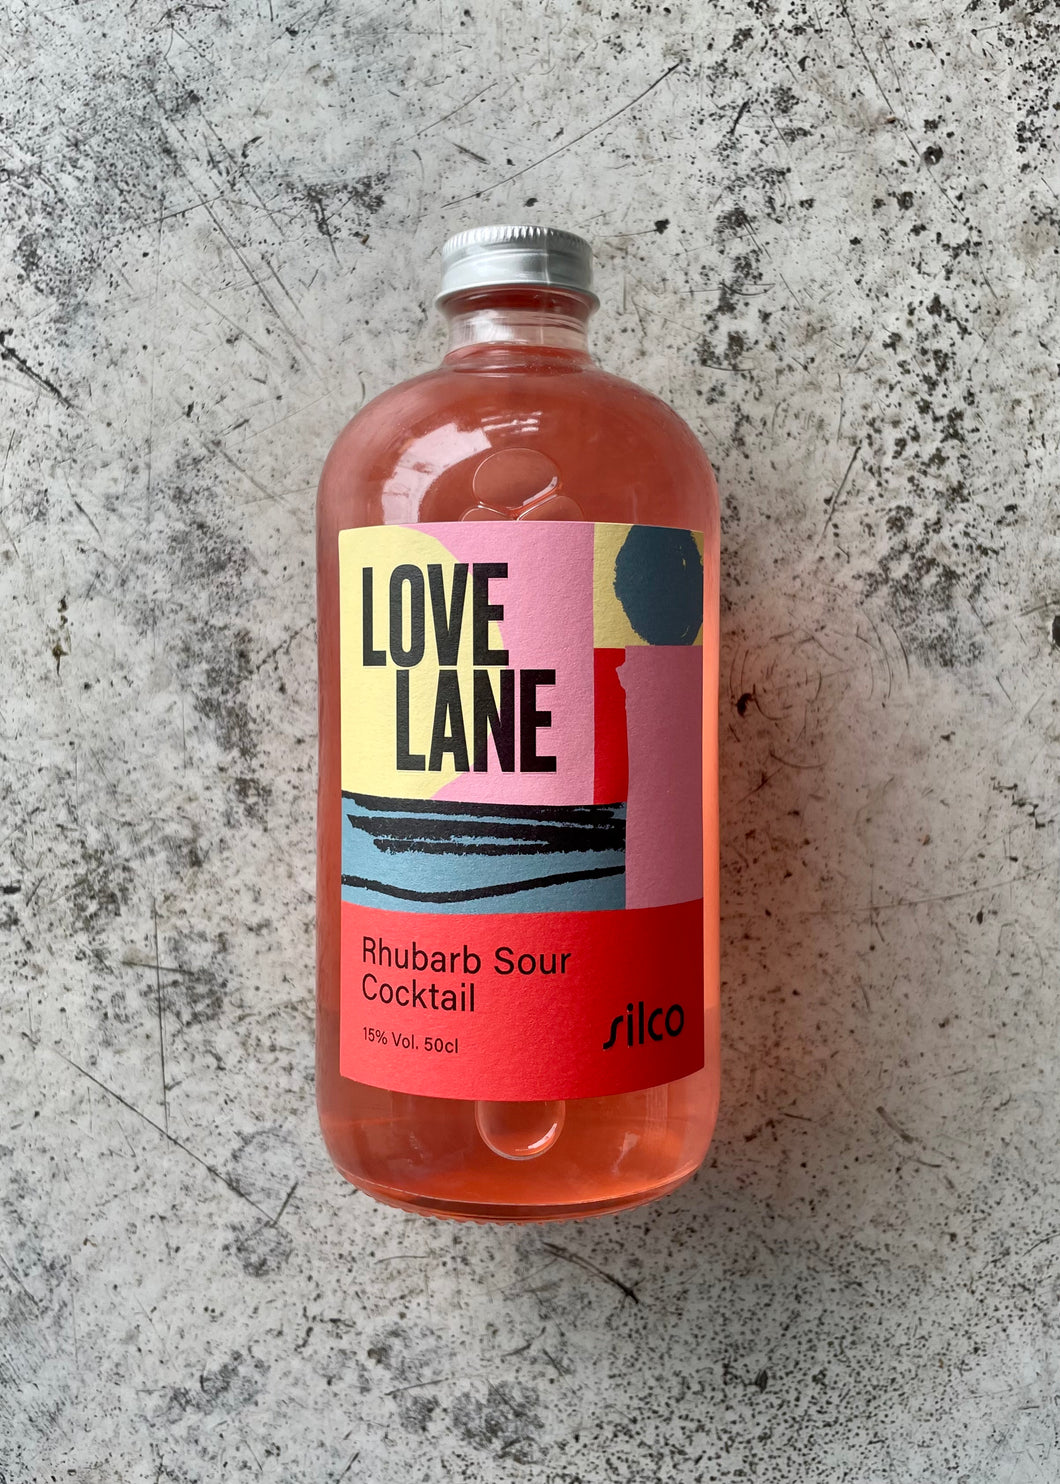 Silco Love Lane Rhubarb Sour 15% (500ml)